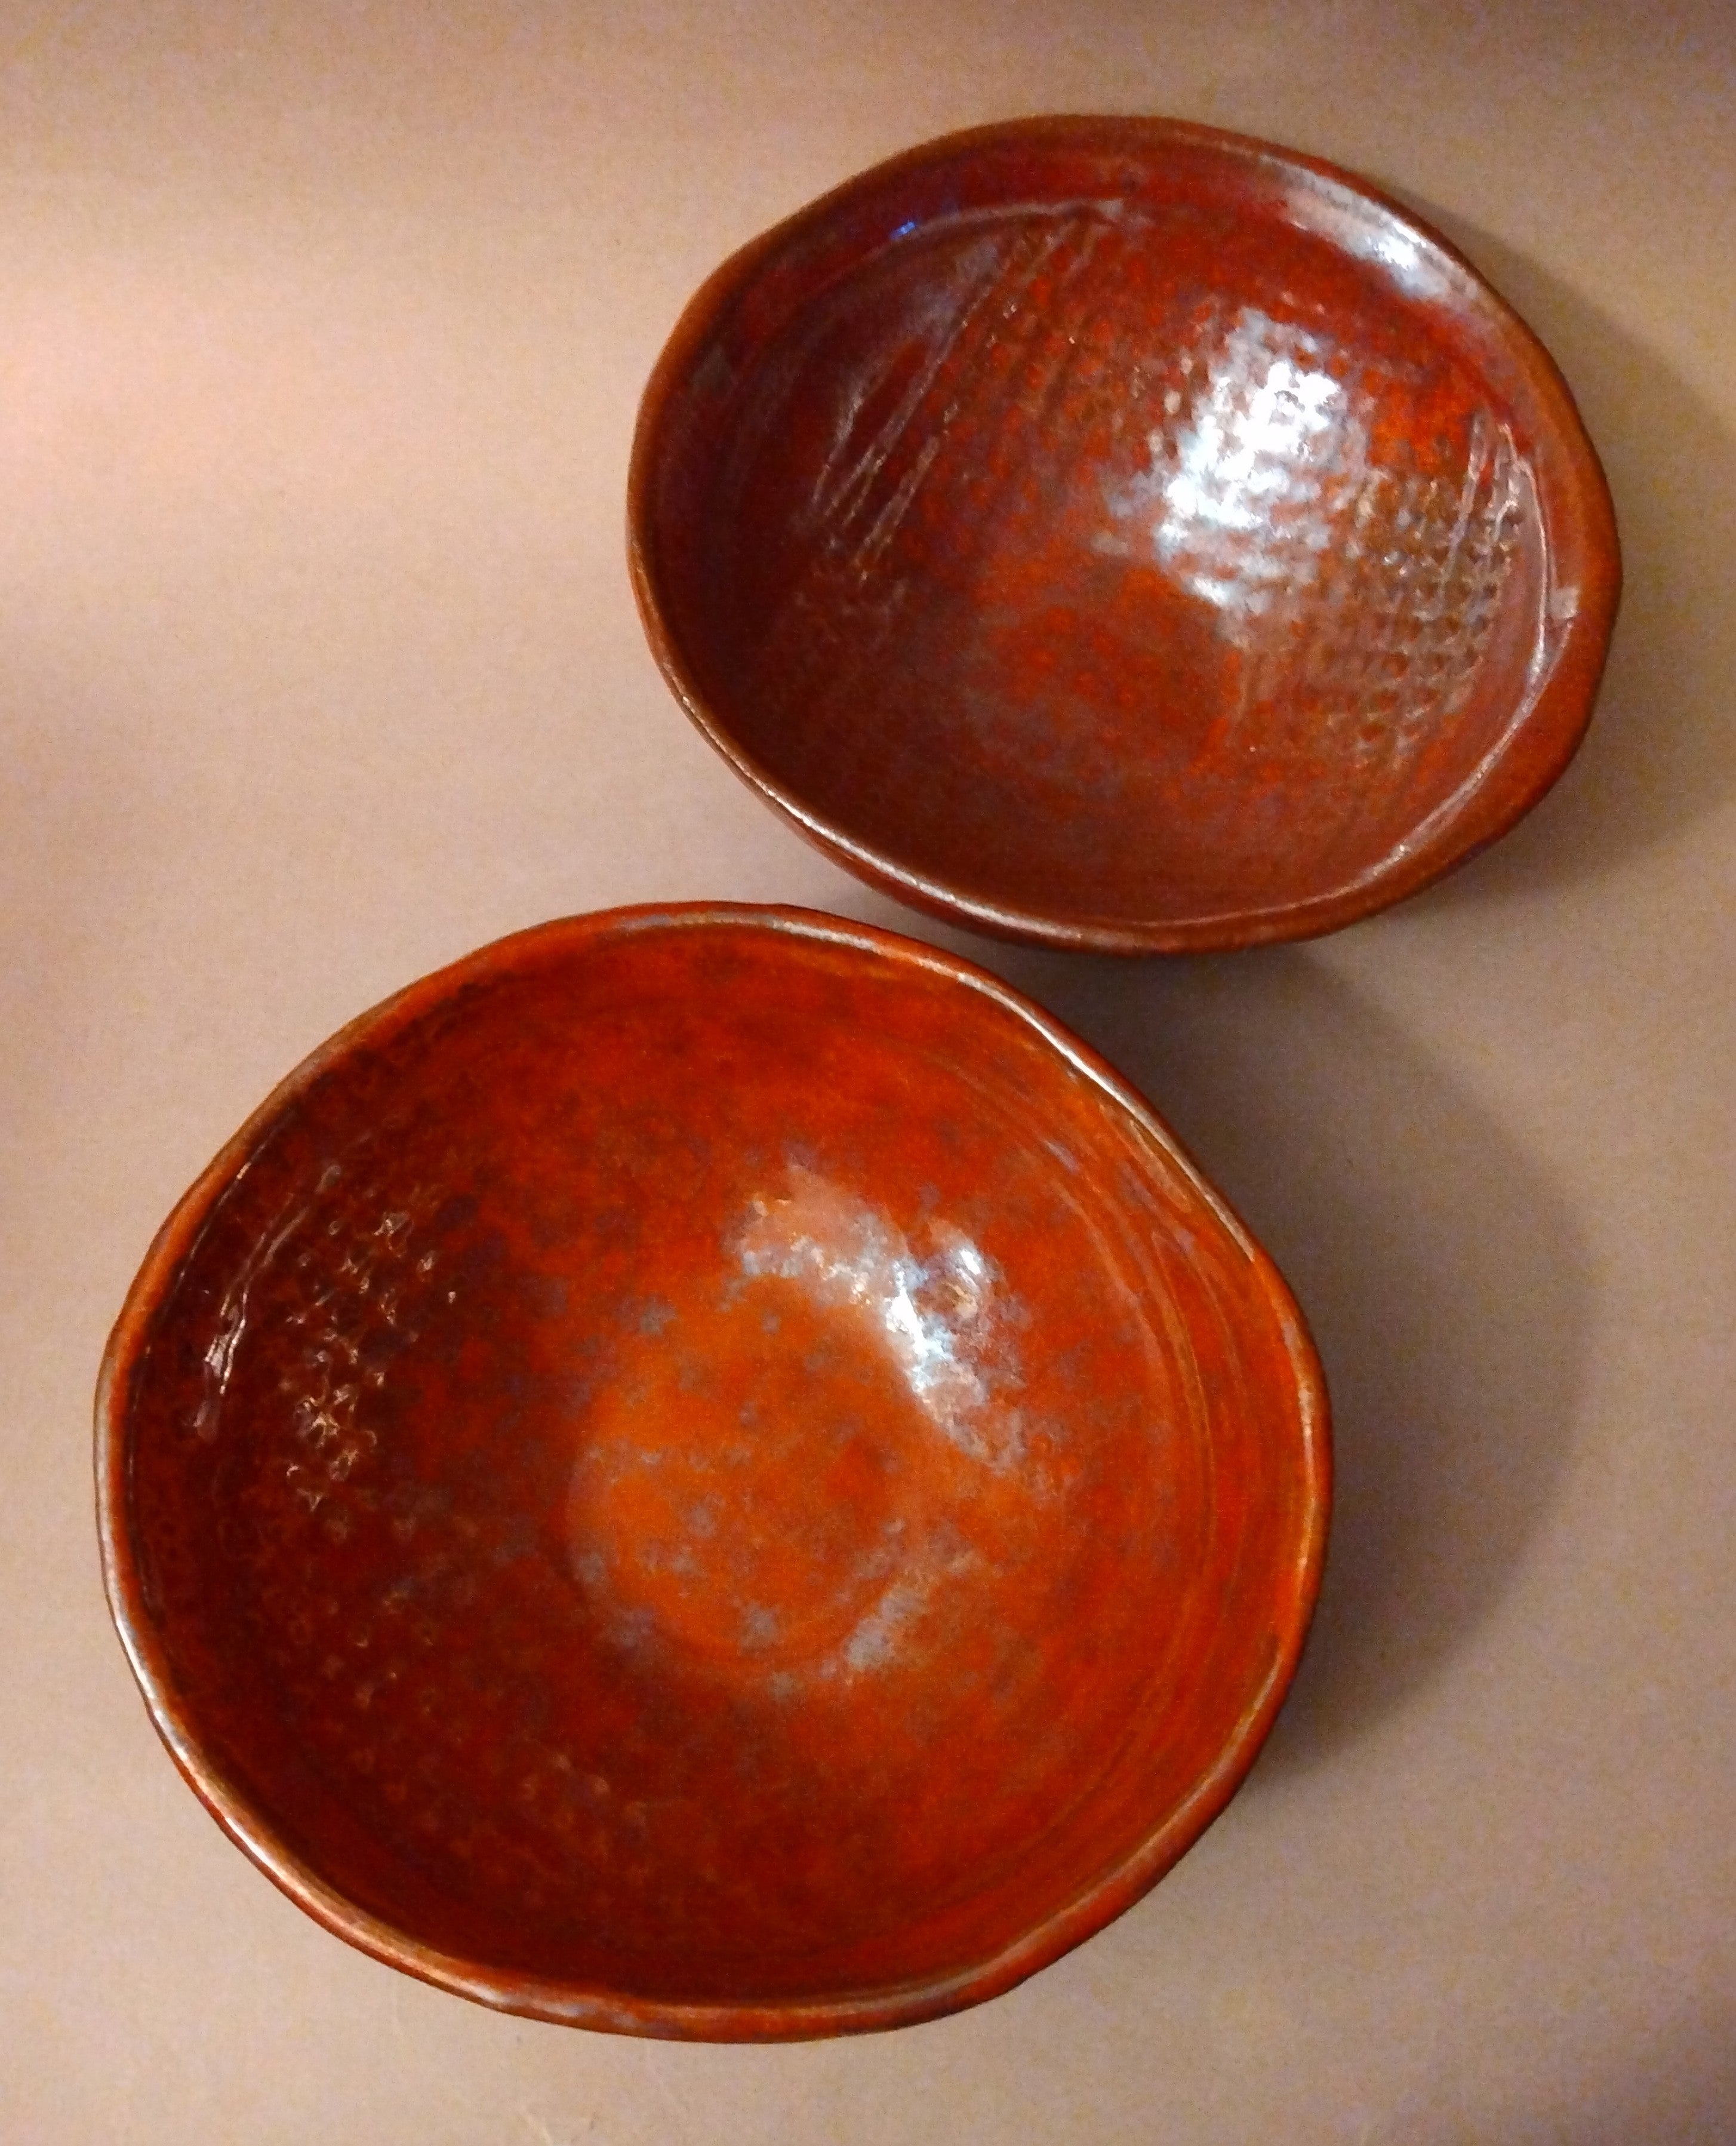 20% to Wajima Earthquake Relief - Ohata Kaki Glaze Serving Dishes, or Summer Tea Bowls, by Penny Sharp Sky